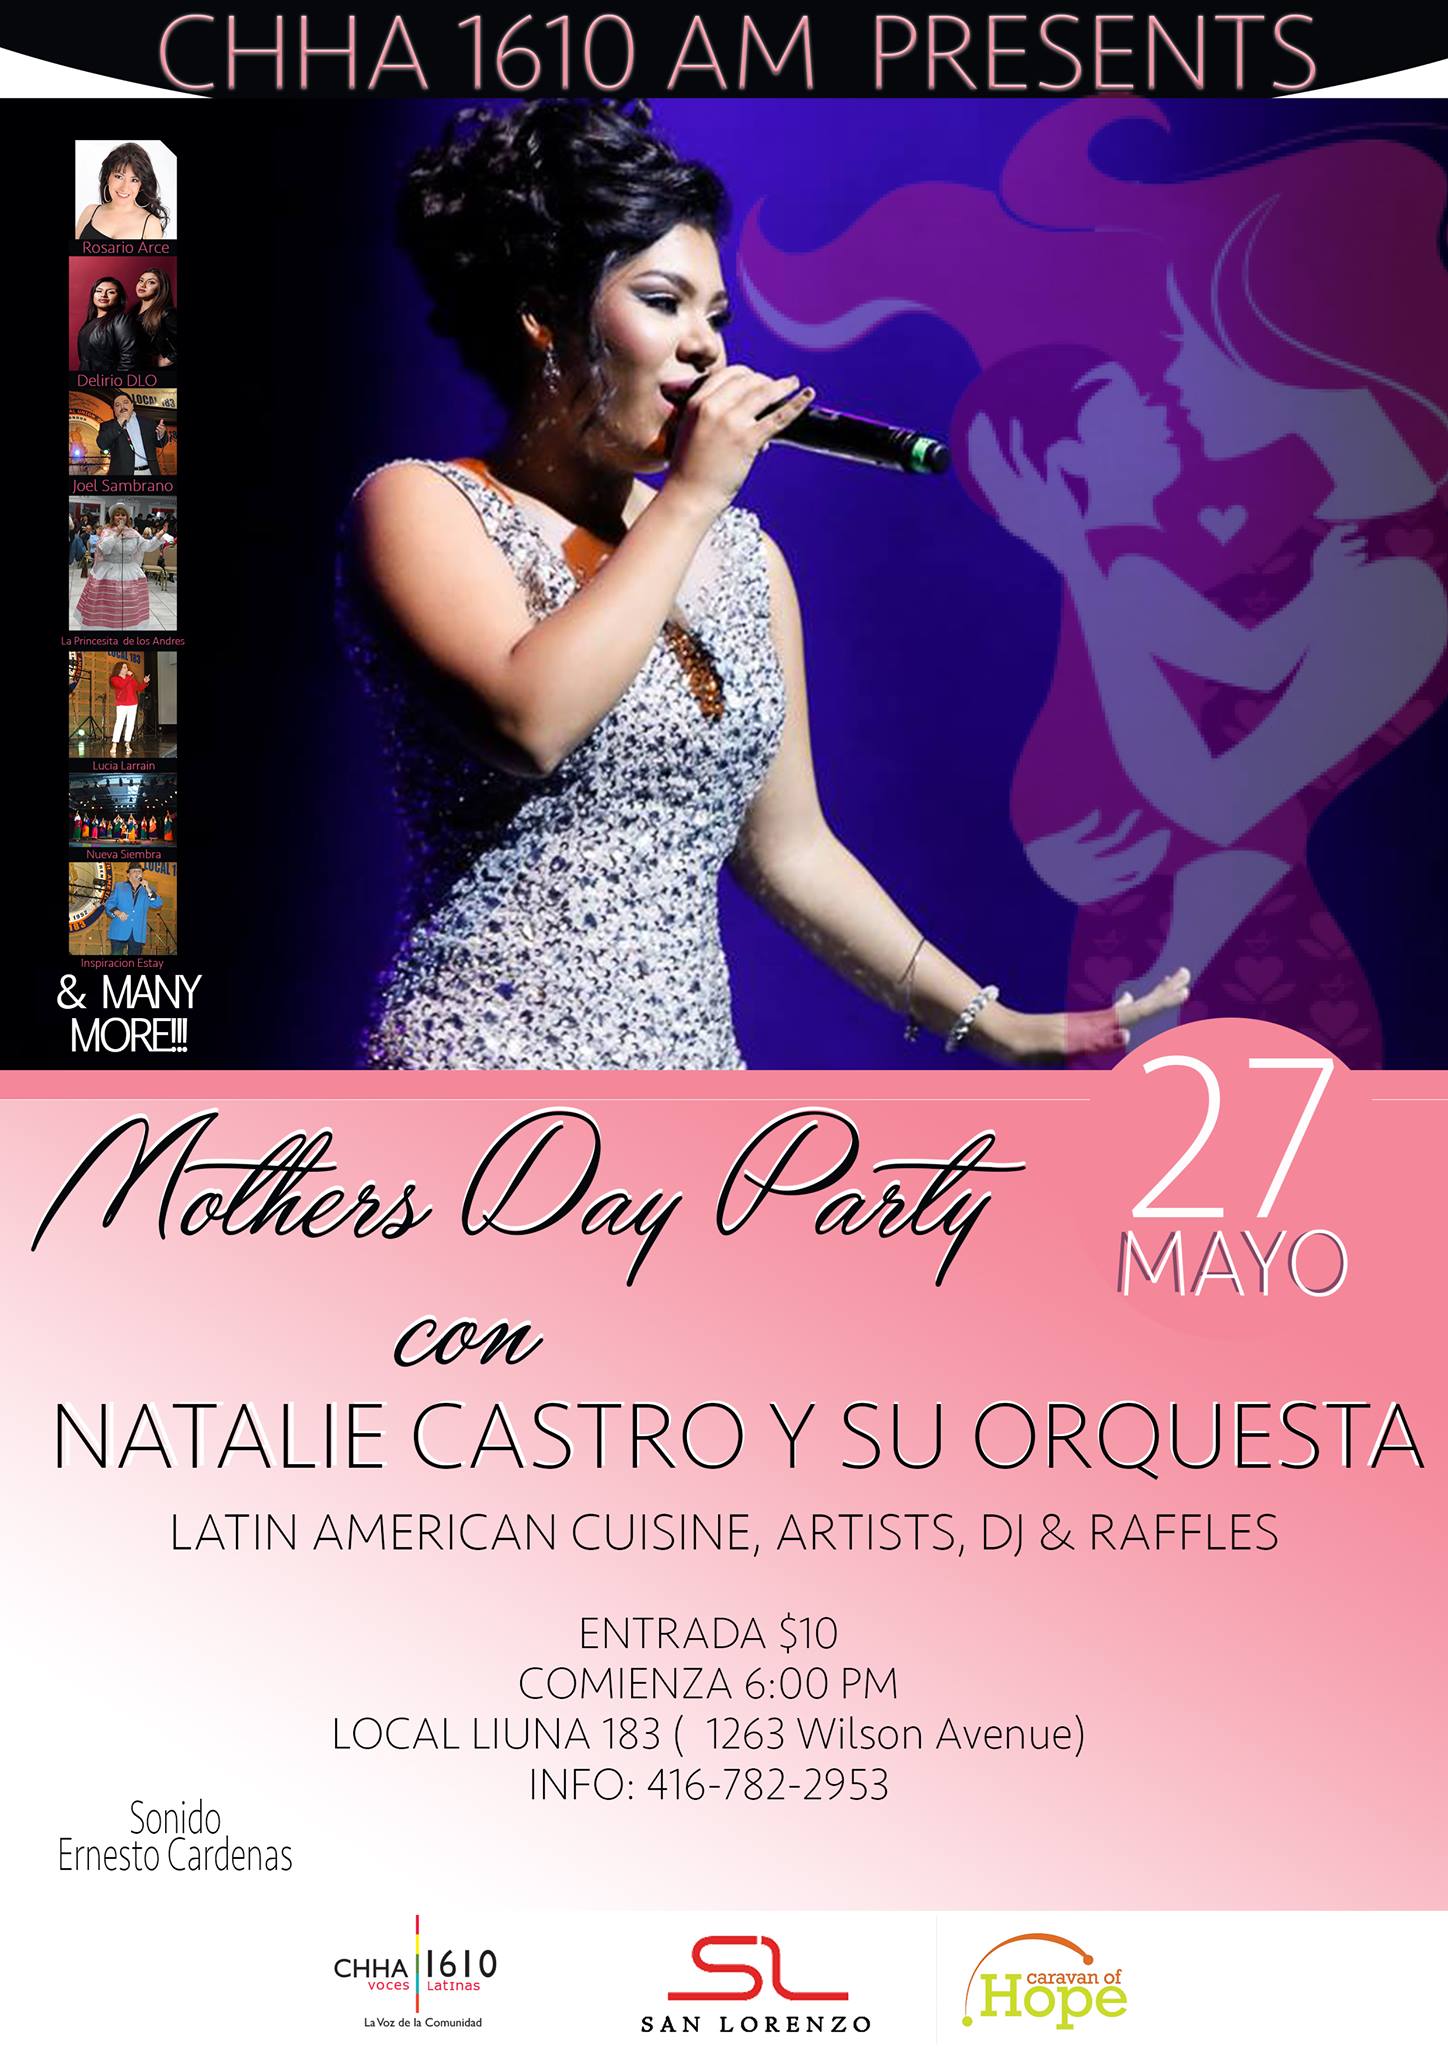 Radio Voces Latinas Invita a celebrar a las mamás este 27 de mayo en evento espectacular